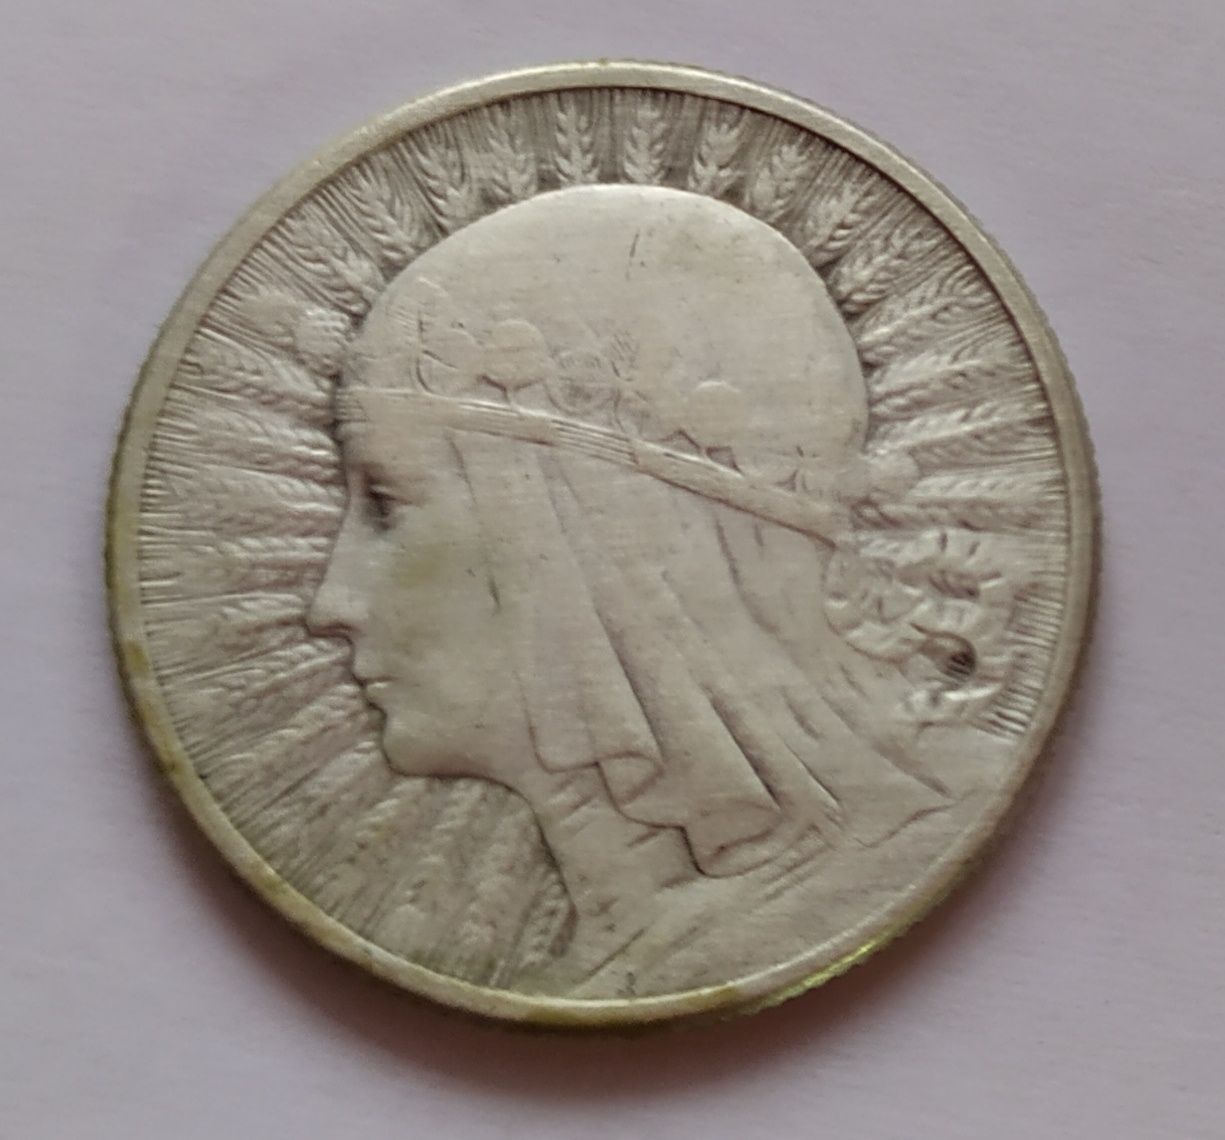 Srebrna moneta kolekcjonerska - 2 zł - Głowa Kobiety Polonii z 1933 r.